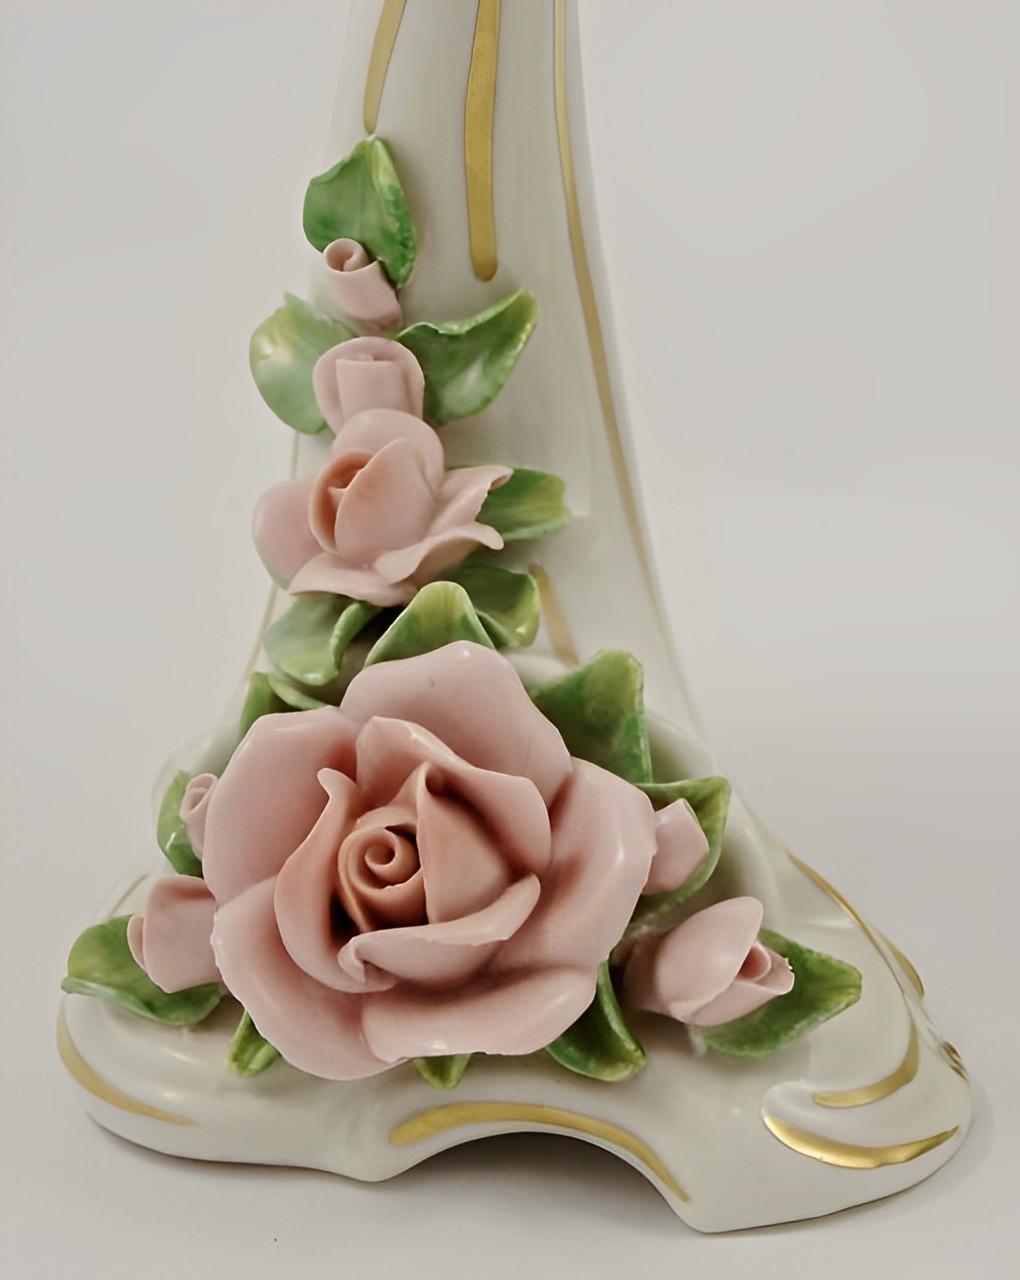 Alka Kunst Dresden schönes Paar Porzellan-Kerzenhalter mit handgemalten rosa Rosen und Blättern, und Goldrand.

Die Kerzenhalter sind 18,7 cm hoch, und die Breite des Sockels beträgt 3,5 cm. Sie sind in sehr gutem Zustand. Hergestellt in